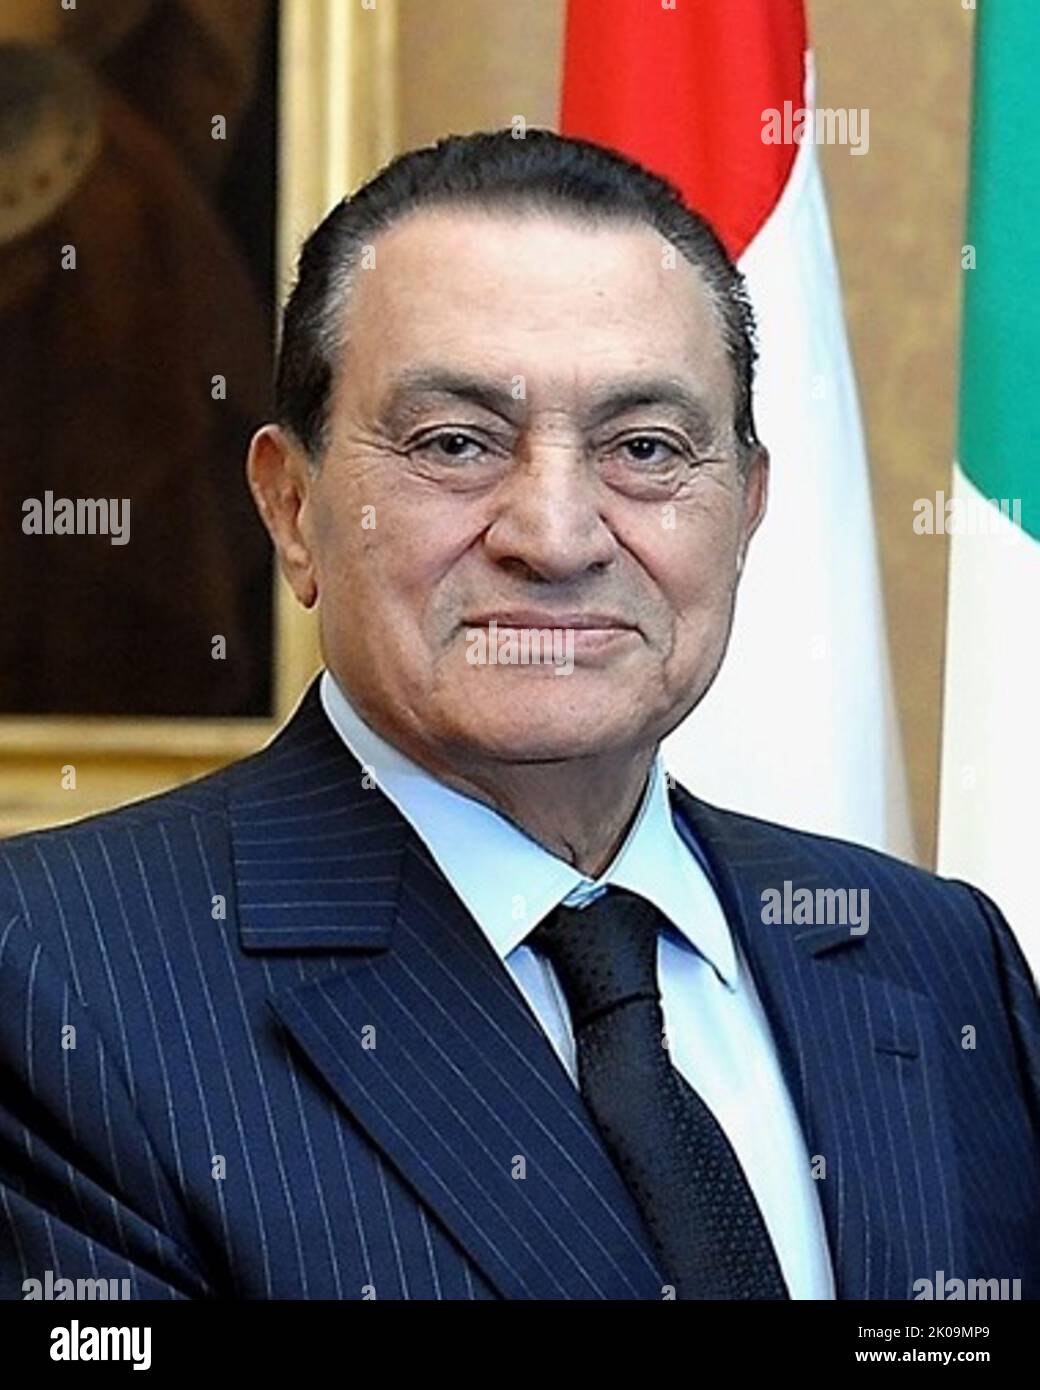 Muhammad Hosni El Sayed Mubarak (4 mai 1928 - 25 février 2020) était un chef militaire et politique égyptien qui a servi comme quatrième président de l'Égypte de 1981 à 2011. Banque D'Images